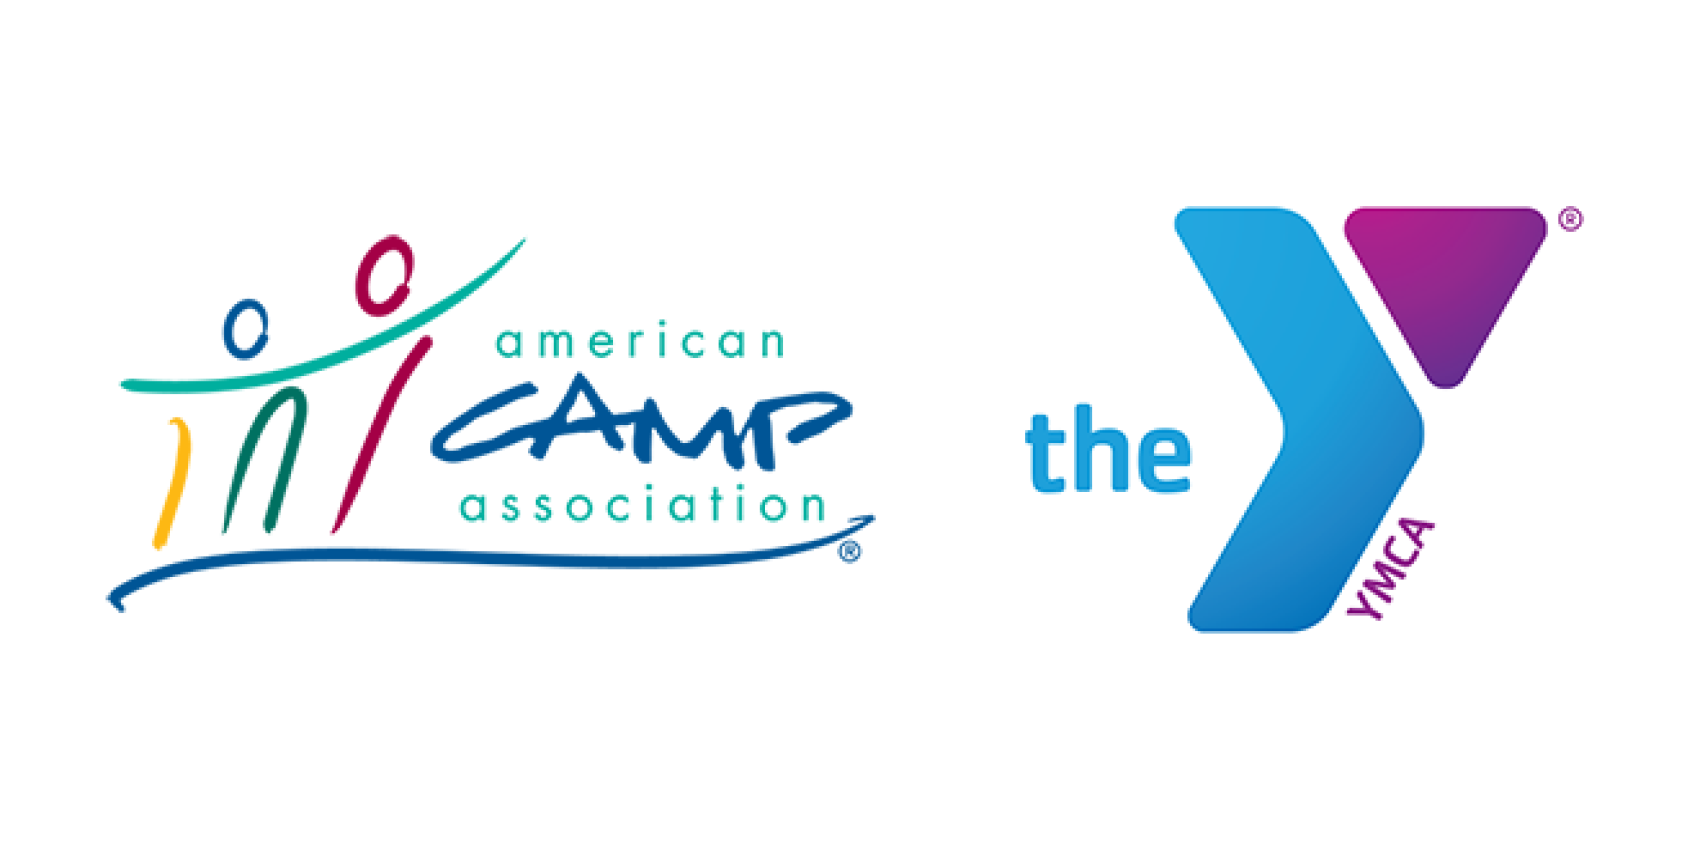 ACA and YMCA logos